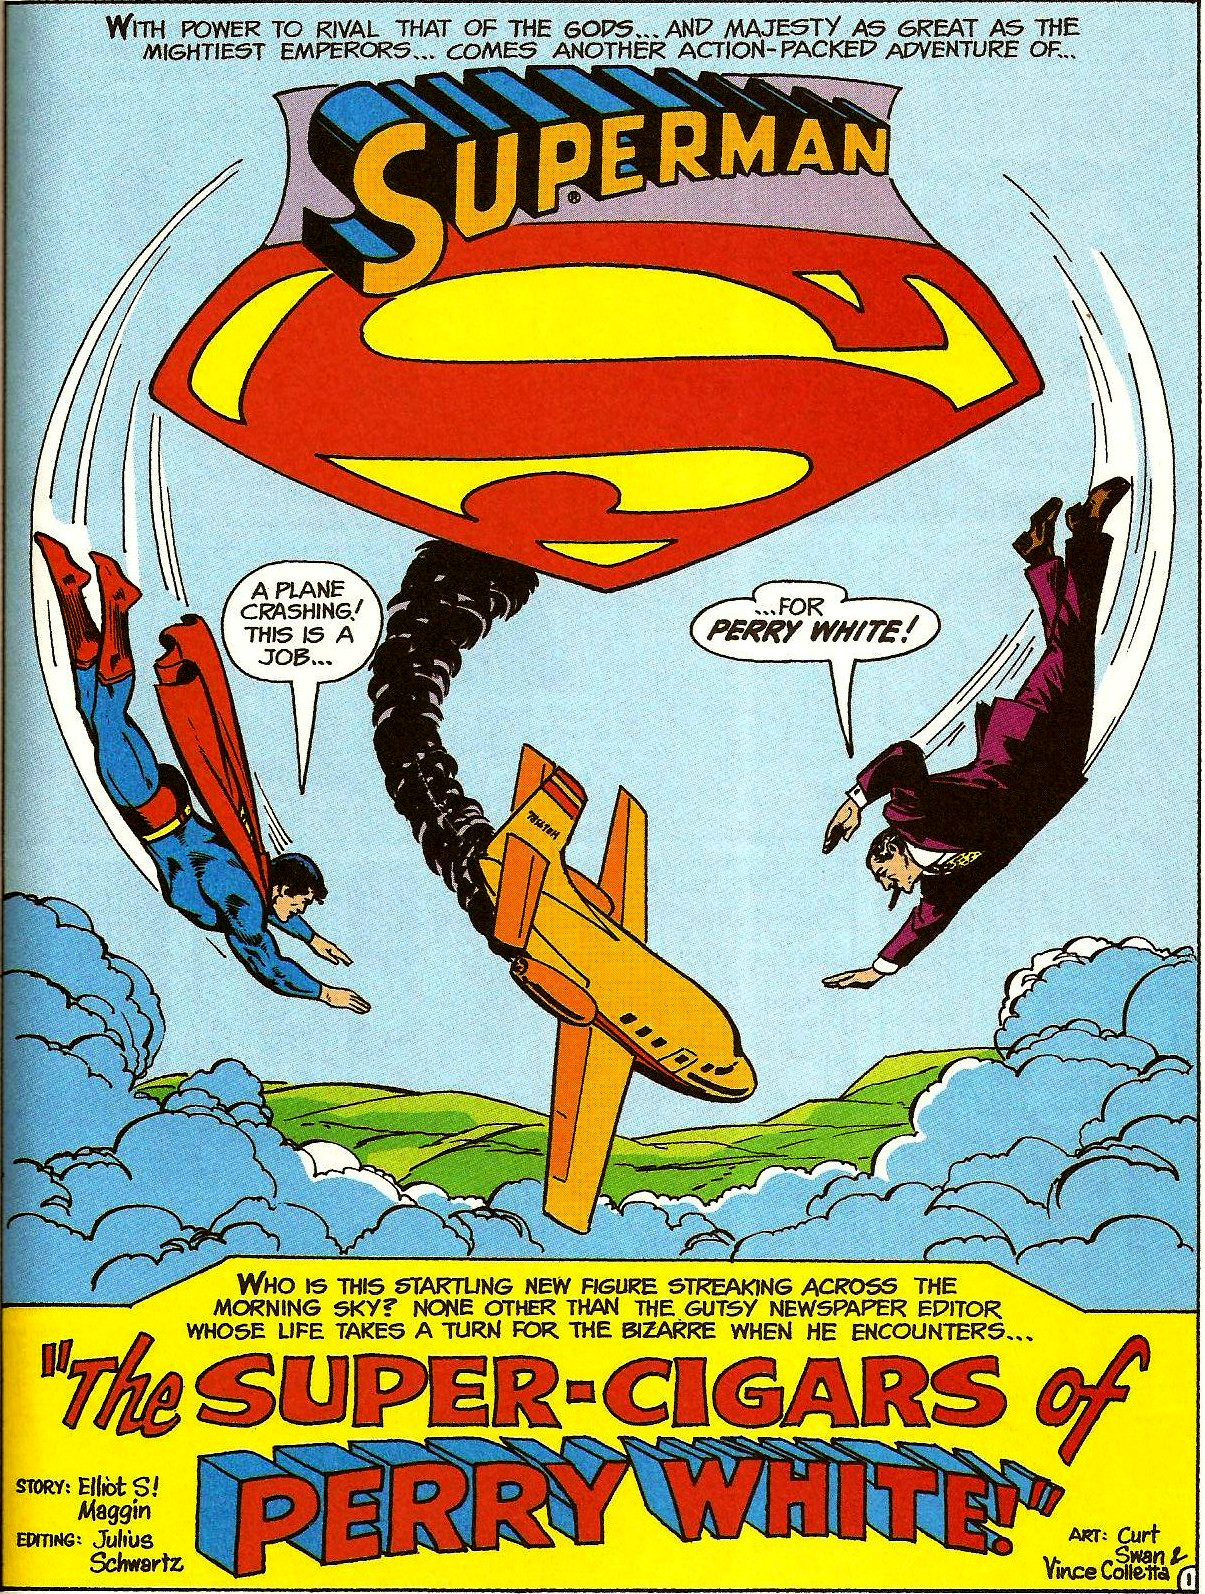 Action Comics (Vol. 1) #436 (1974)